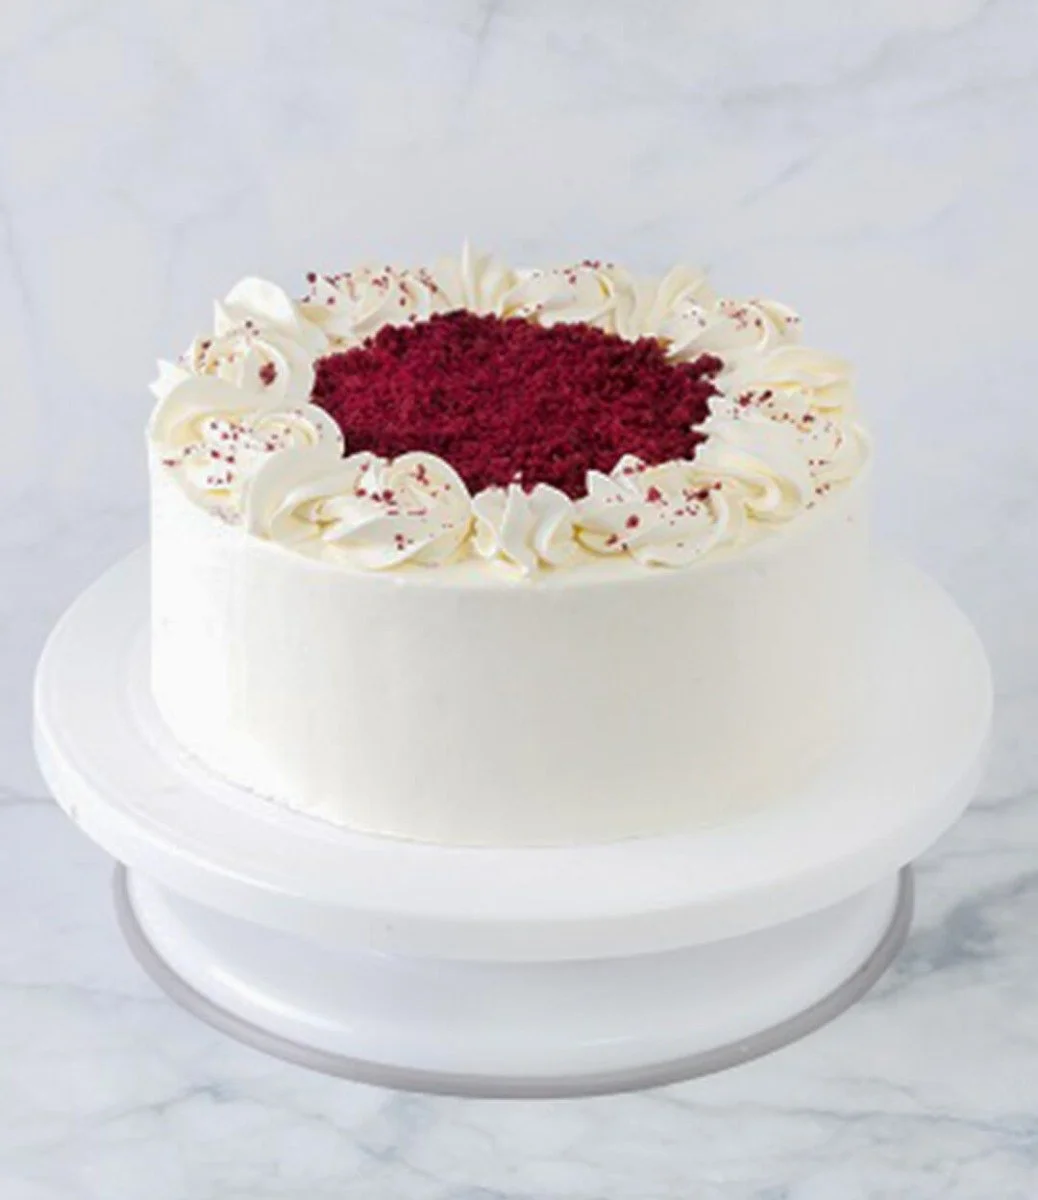 Keto Red Velvet Cake By Cake Social